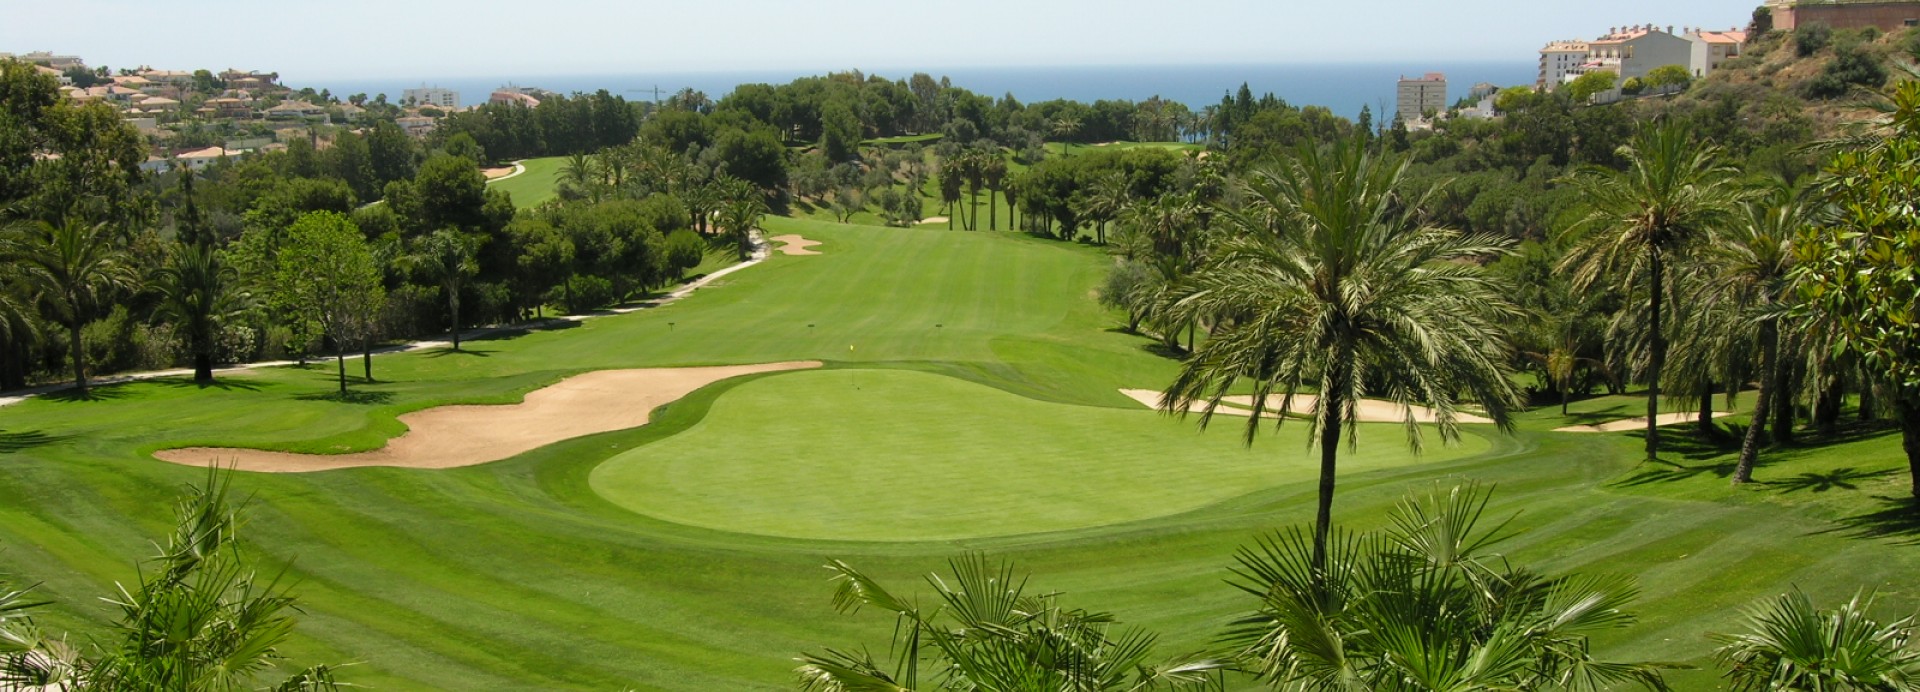 Golf Torrequebrada  | Golfové zájezdy, golfová dovolená, luxusní golf